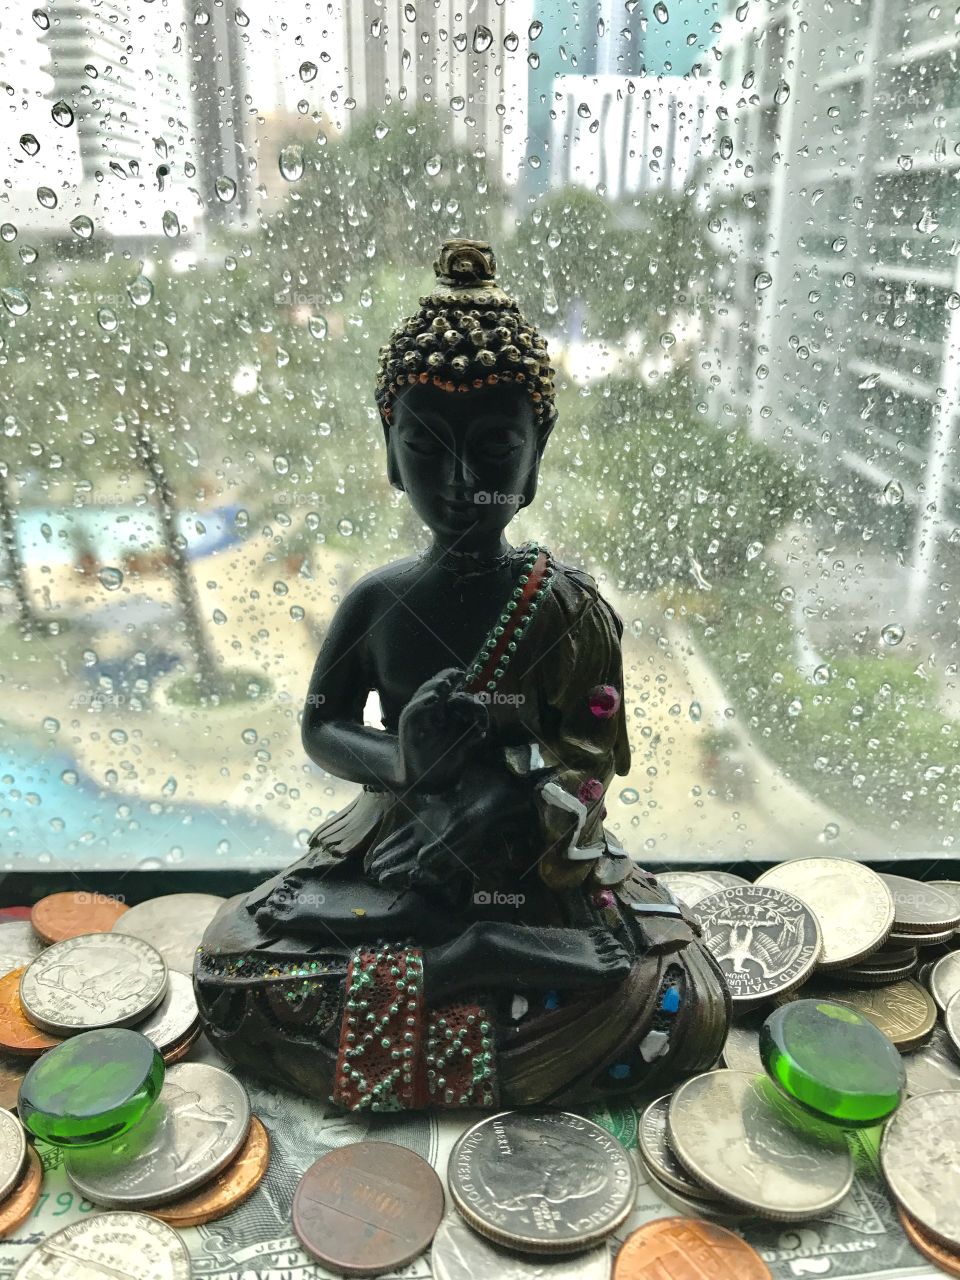 Meditation in a rainy day!